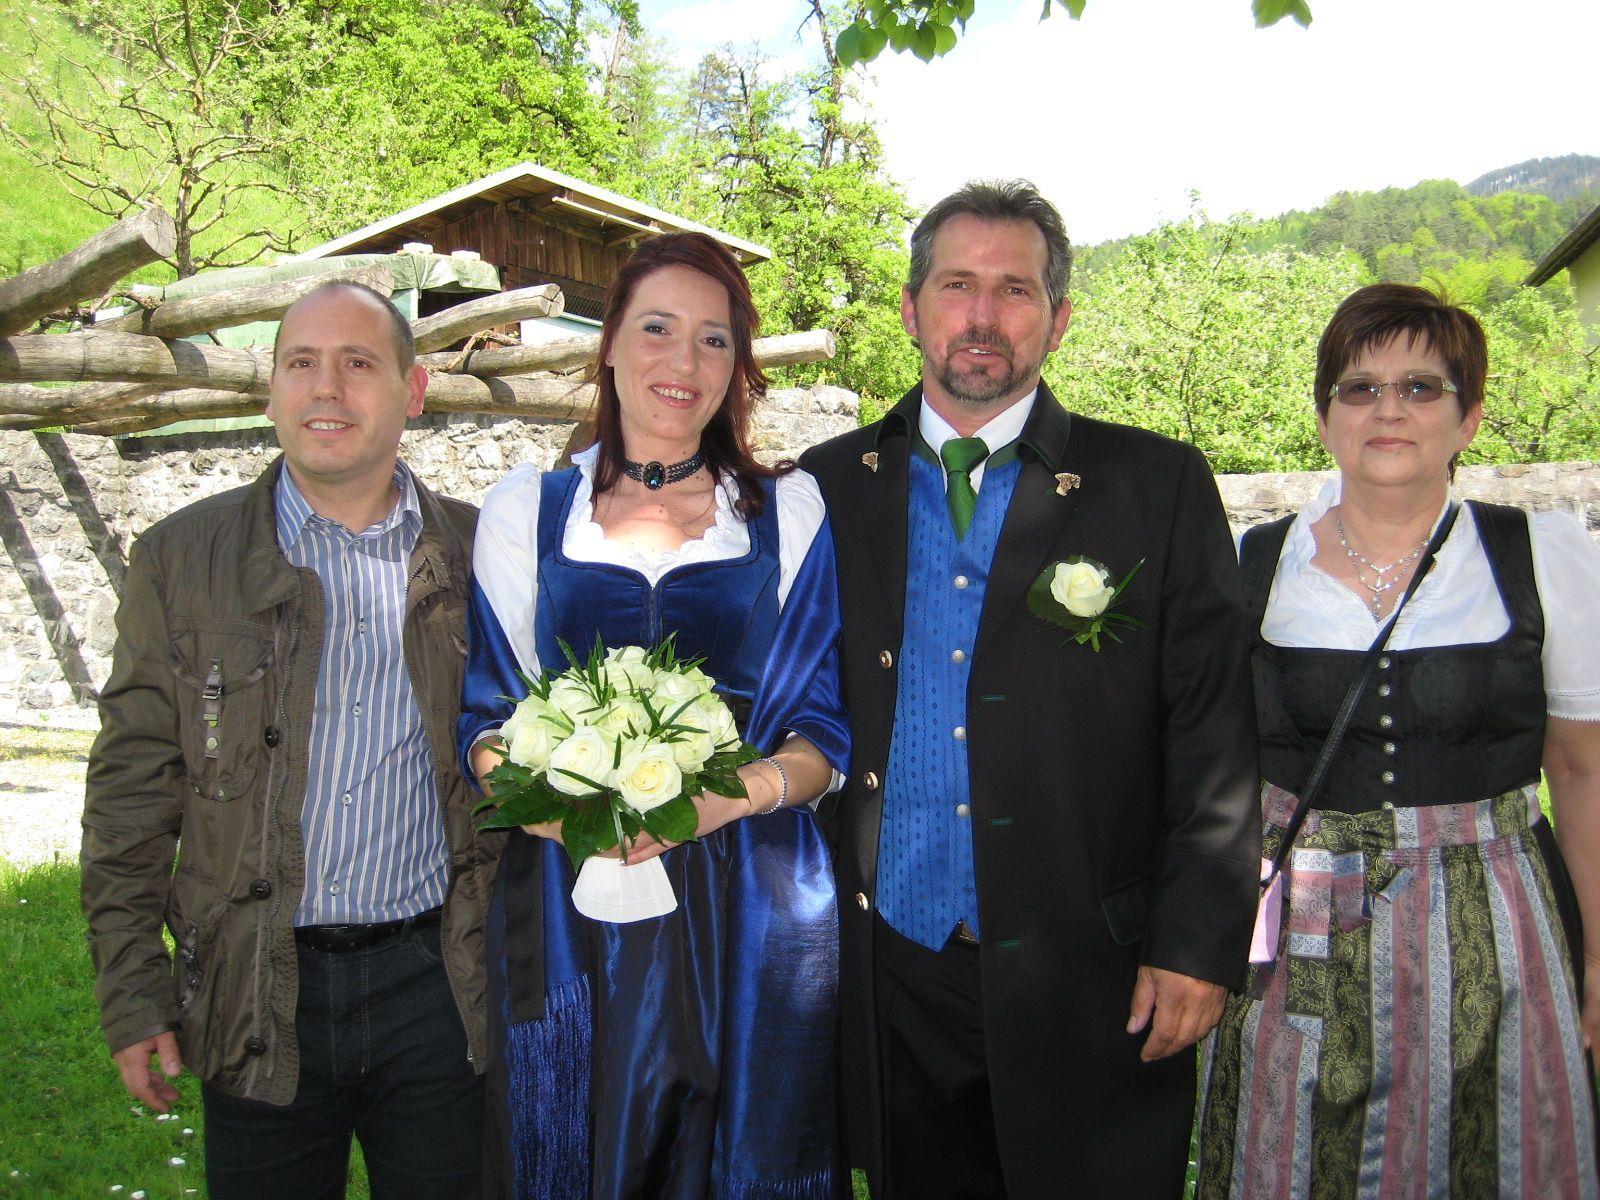 Carolina Patschg und Christian Kessler haben geheiratet.